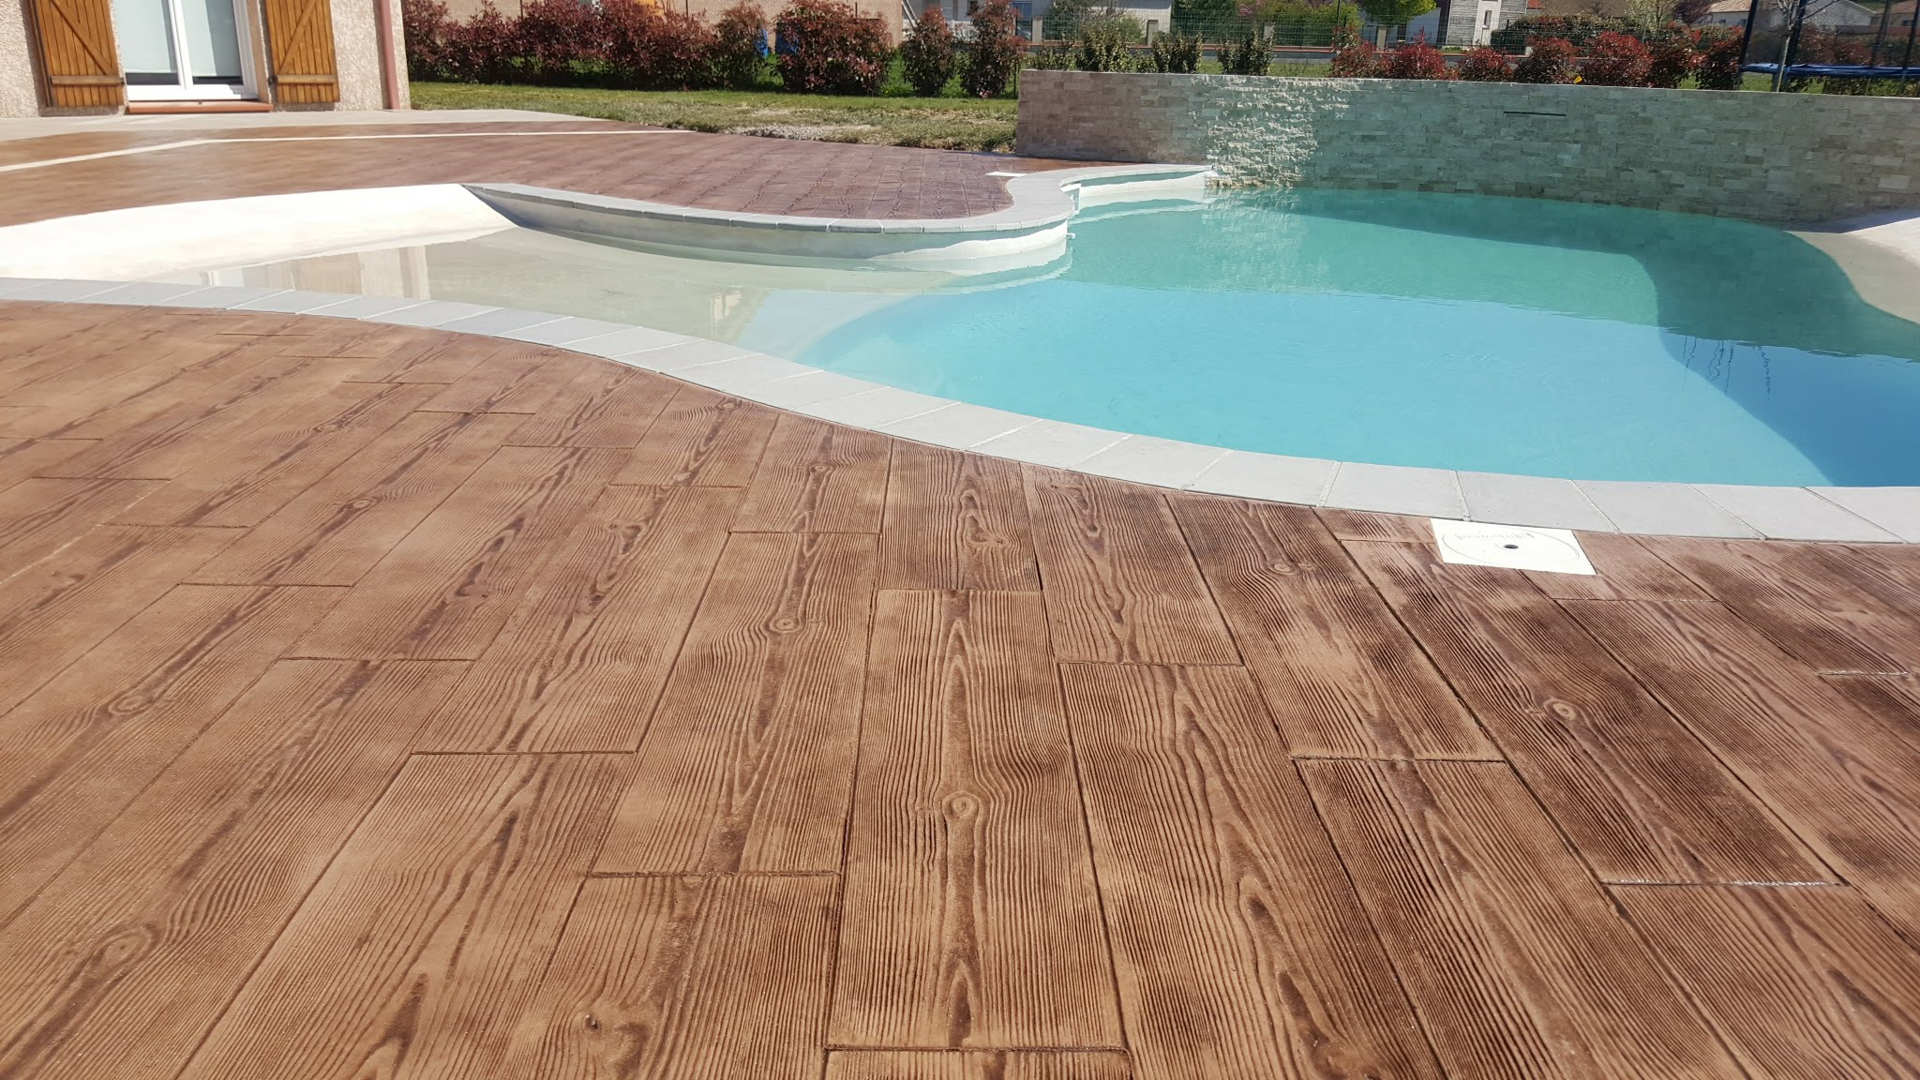 Bedrukt beton houtimitatie op de grond rond het zwembad